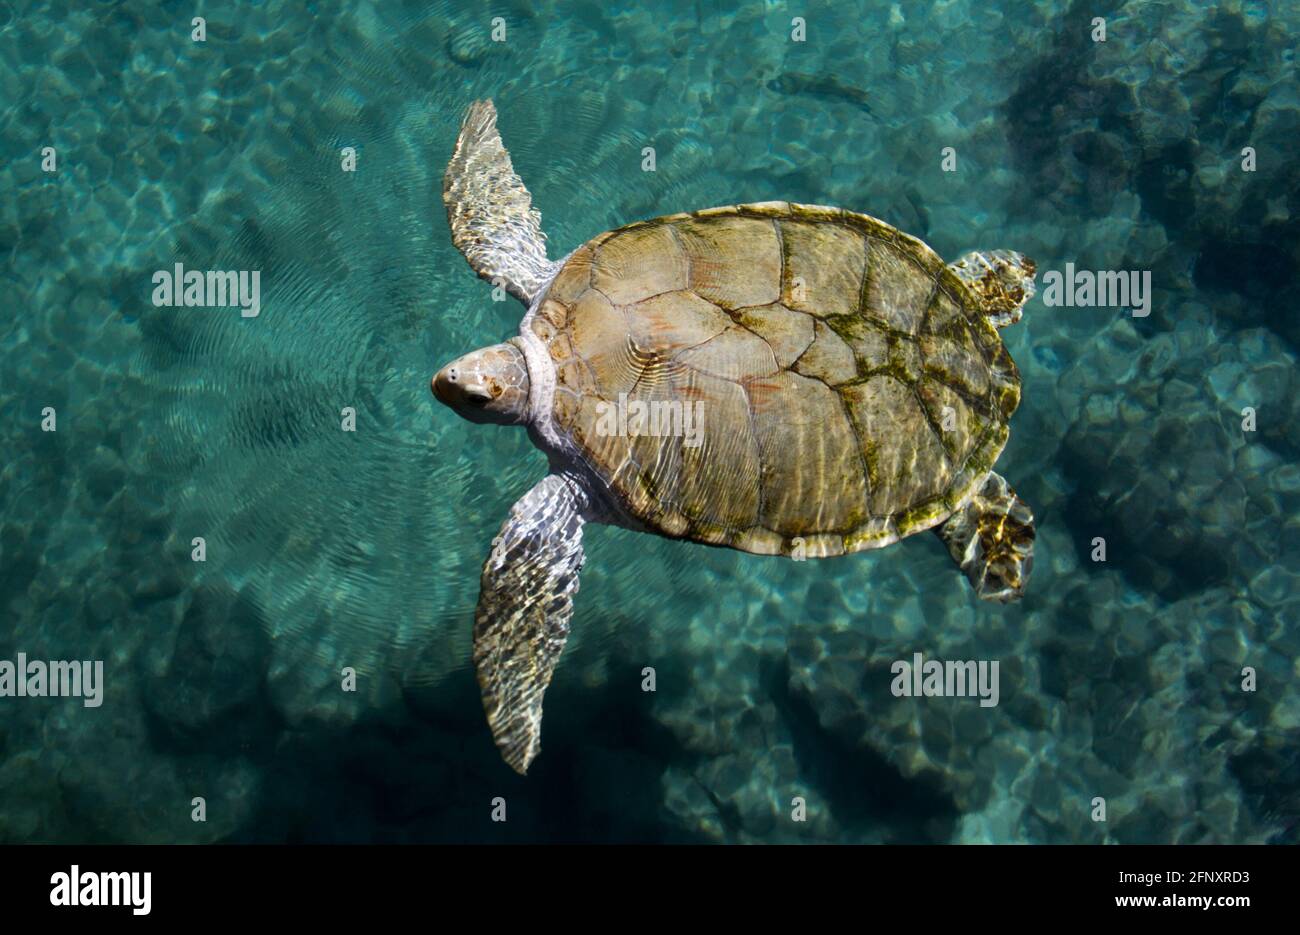 La tortuga verde, Chelonia mydas, pertenece a la familia de los Chelonios y se encuentra en los océanos tropicales y subtropicales de todo el mundo. El cuello es corto, Foto de stock